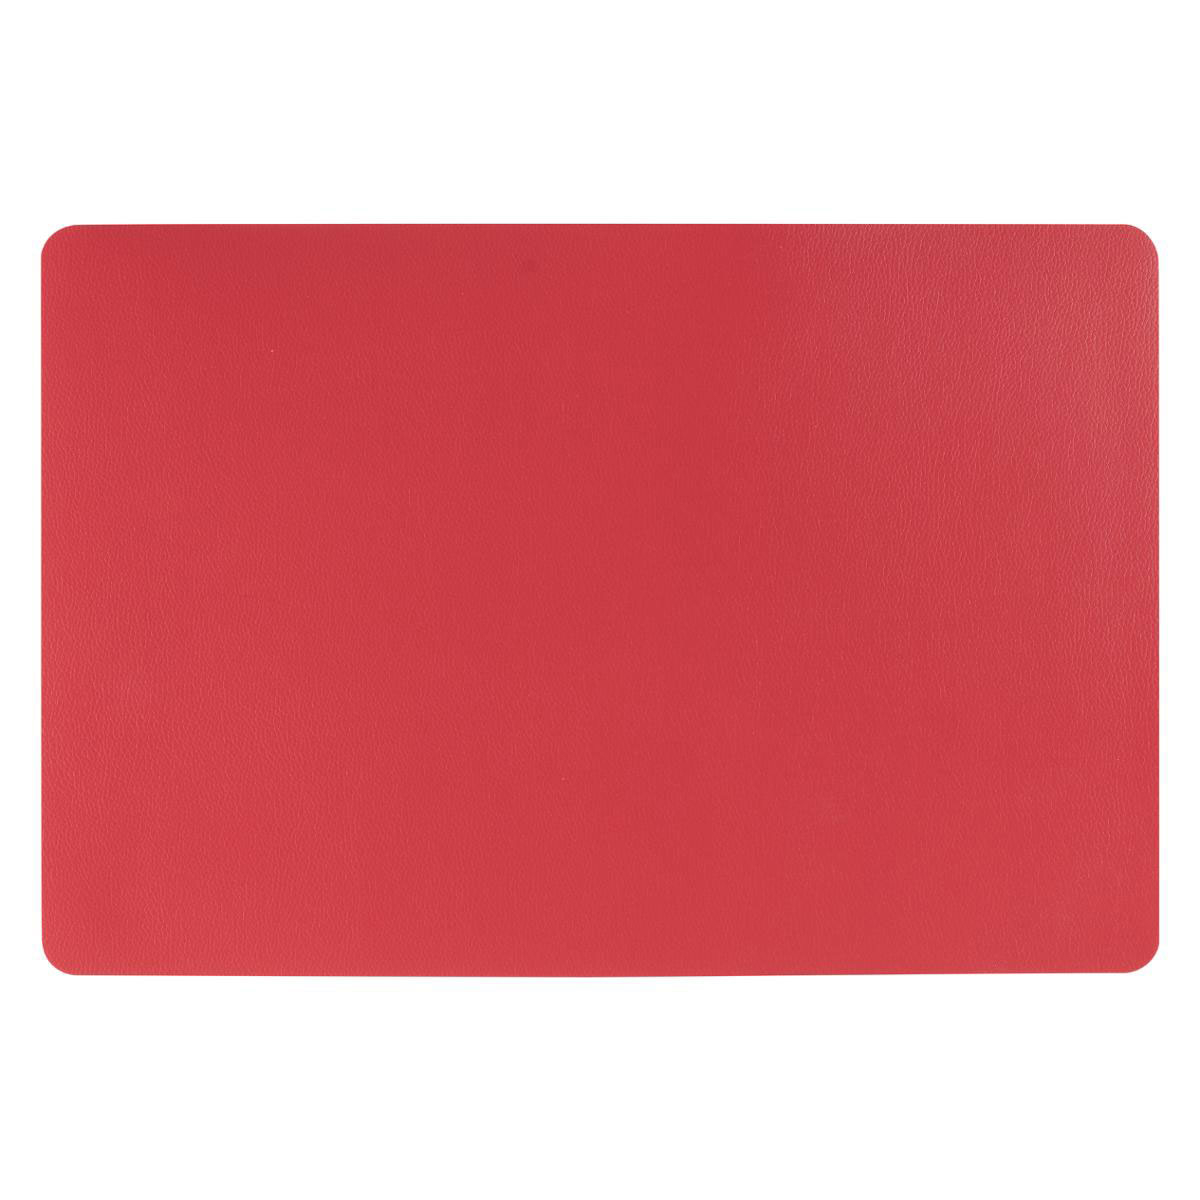 Σουπλά S-D Leather Red 160661F 174548